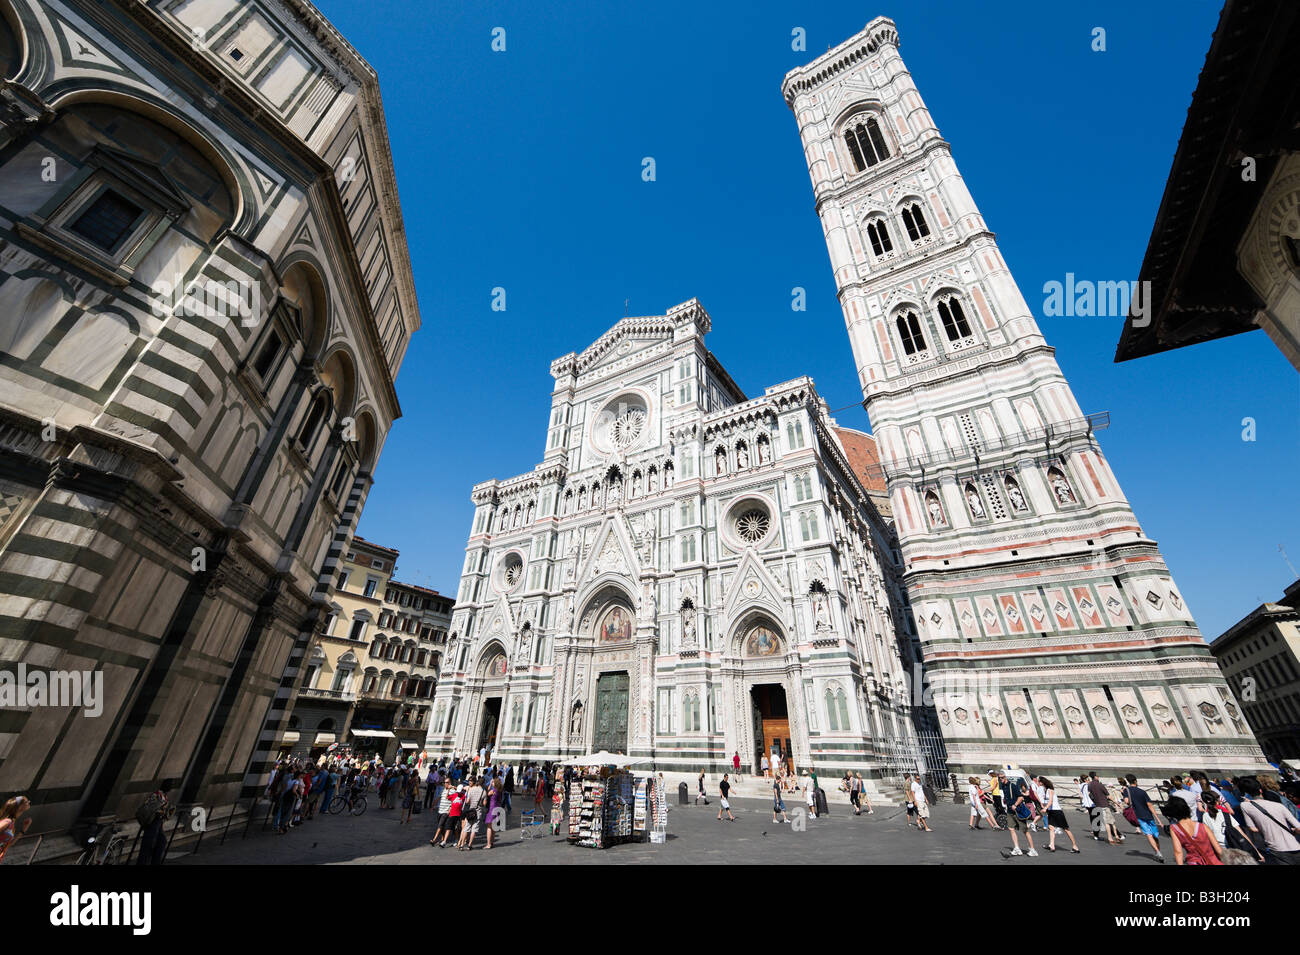 Basilica di Santa Maria del Fiore (the Duomo), Giotto's Campanile and the Baptistry, Piazza San Giovanni, Florence, Italy Stock Photo